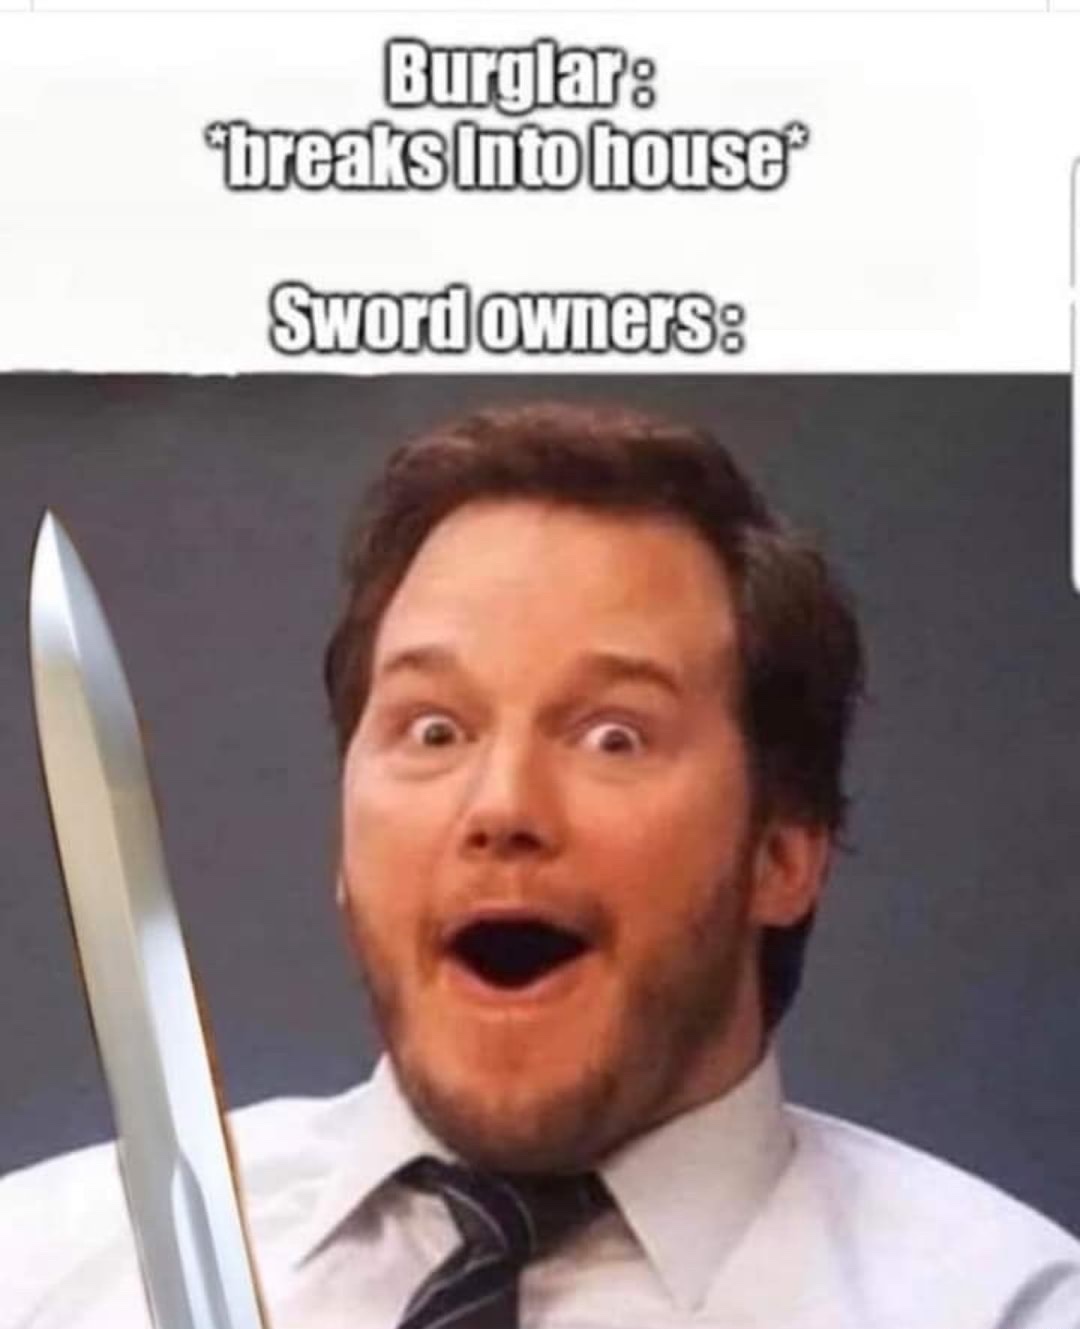 sword owners be like - meme